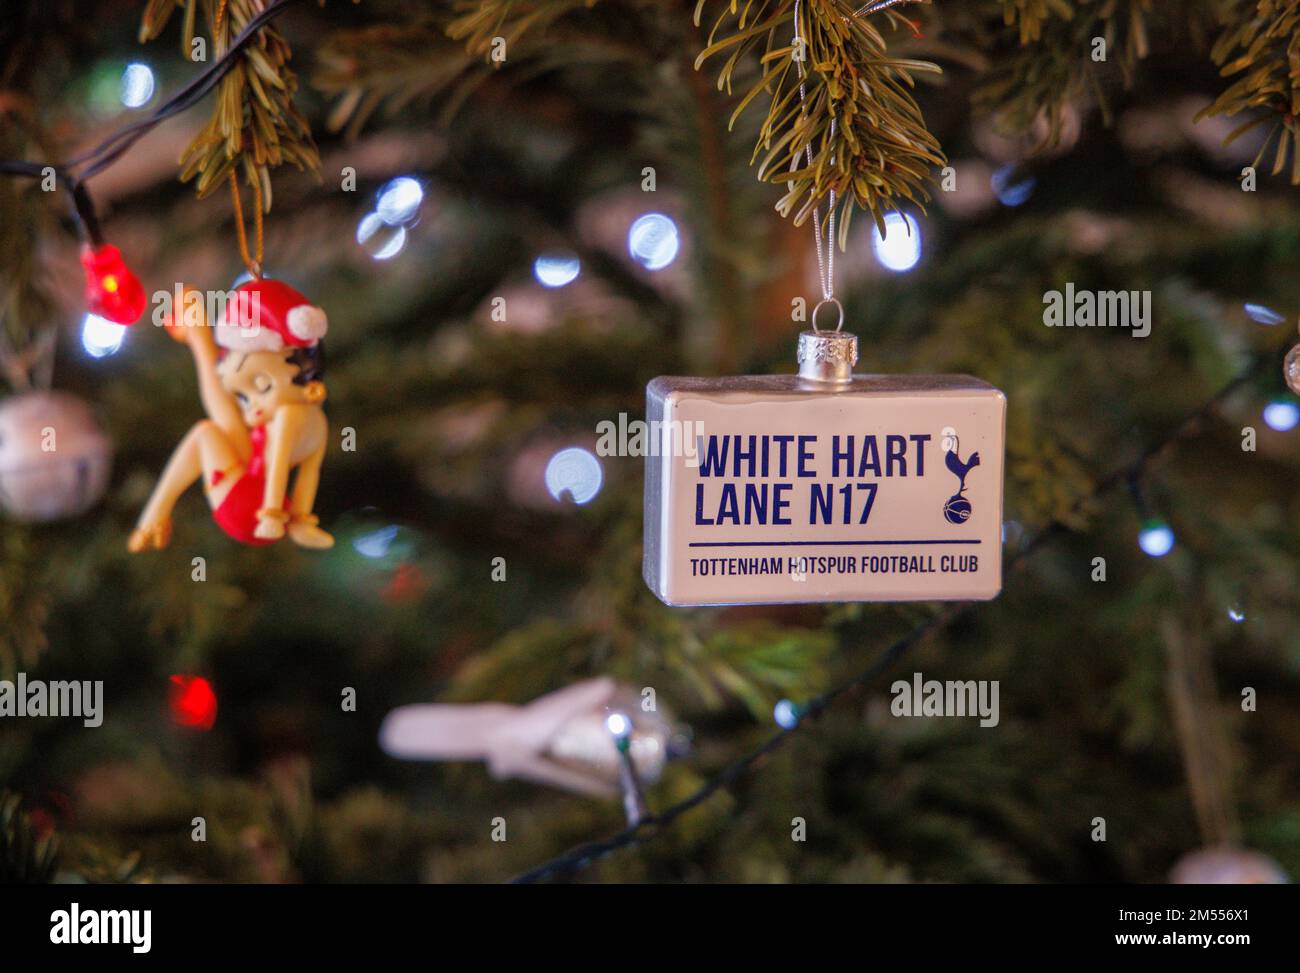 Eine Tottenham Hotspur Fußball-Clubkugel auf einem Weihnachtsbaum. White Hart Lane, London N17, ist die Heimat von „Spurs“, dem Spitznamen Tottenham Hotspur. Stockfoto